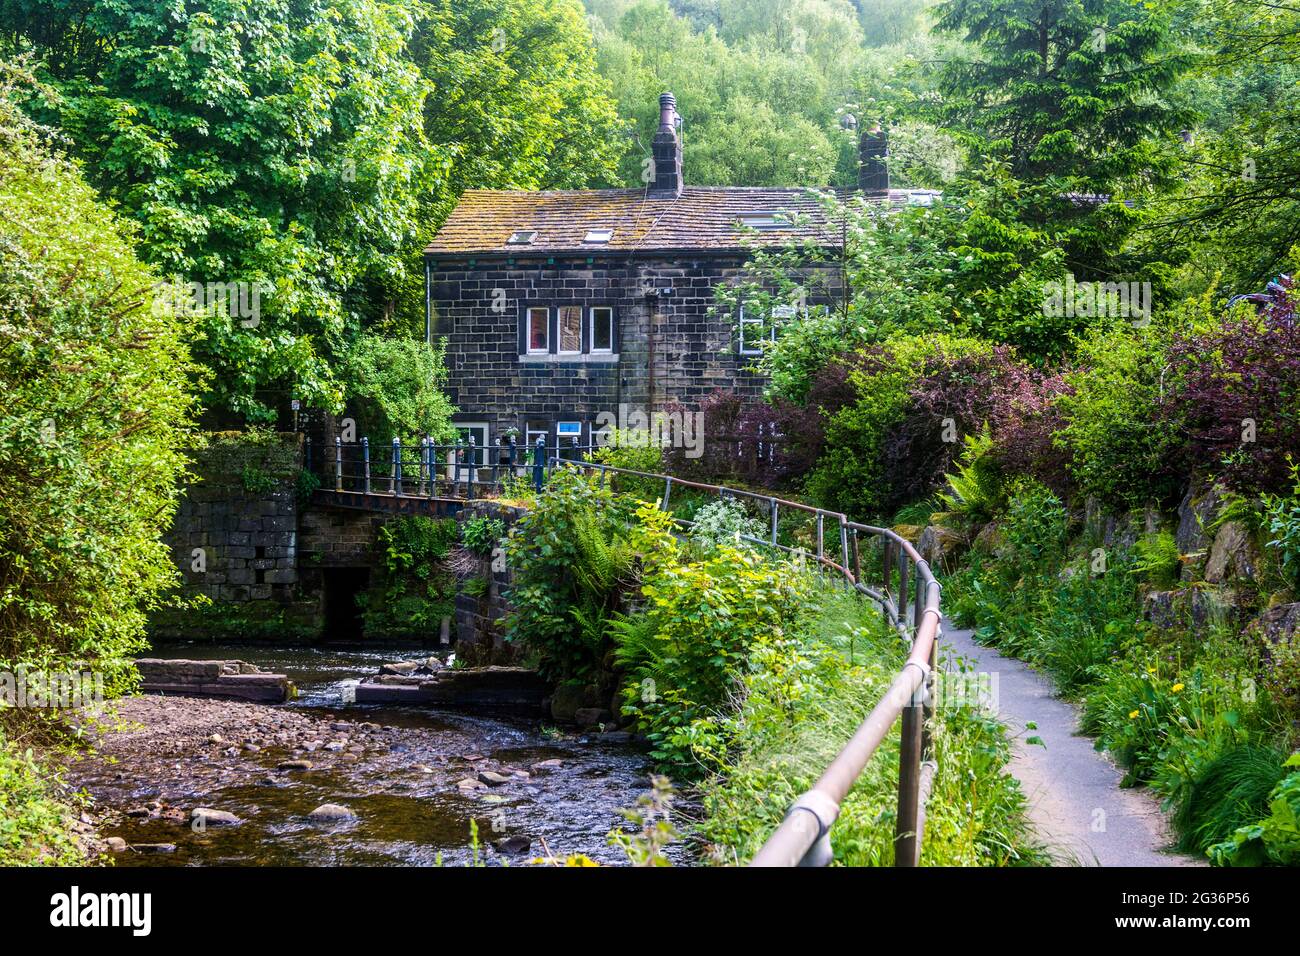 Una casa está situada en un bosque junto al río Calder, cerca del puente Hebden, Yorkshire, Reino Unido. Foto de stock